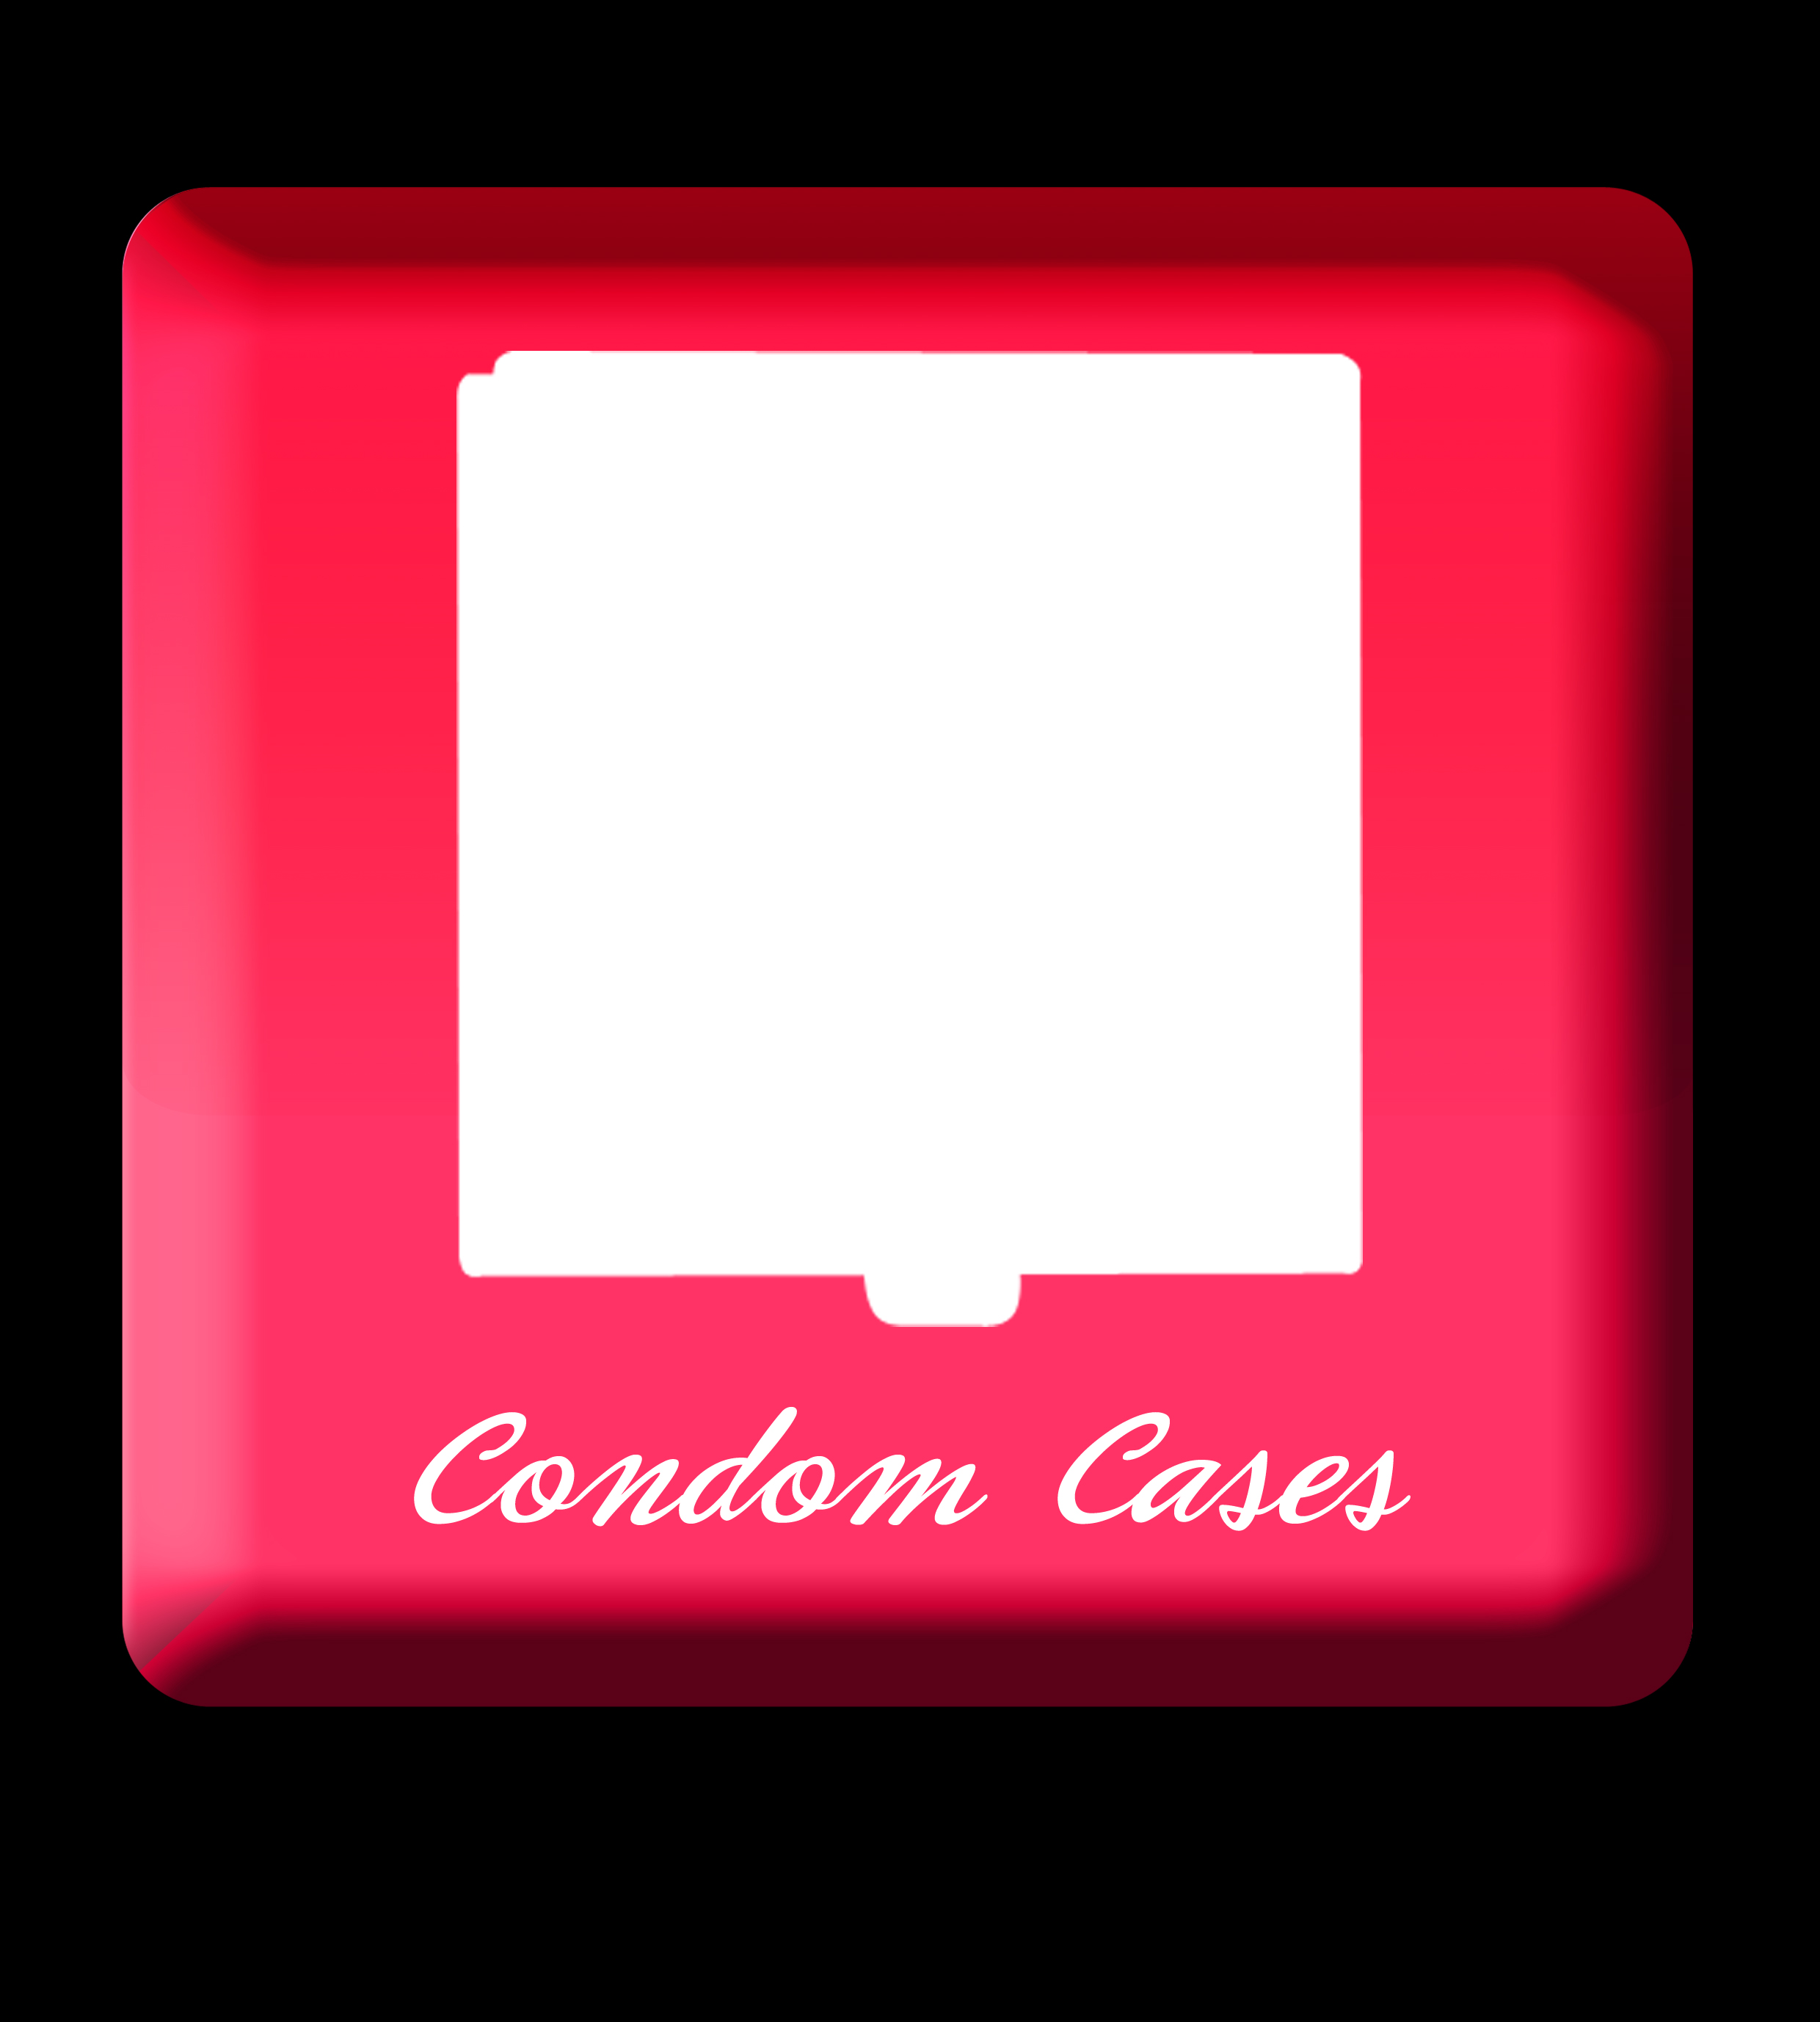 Condom Cases